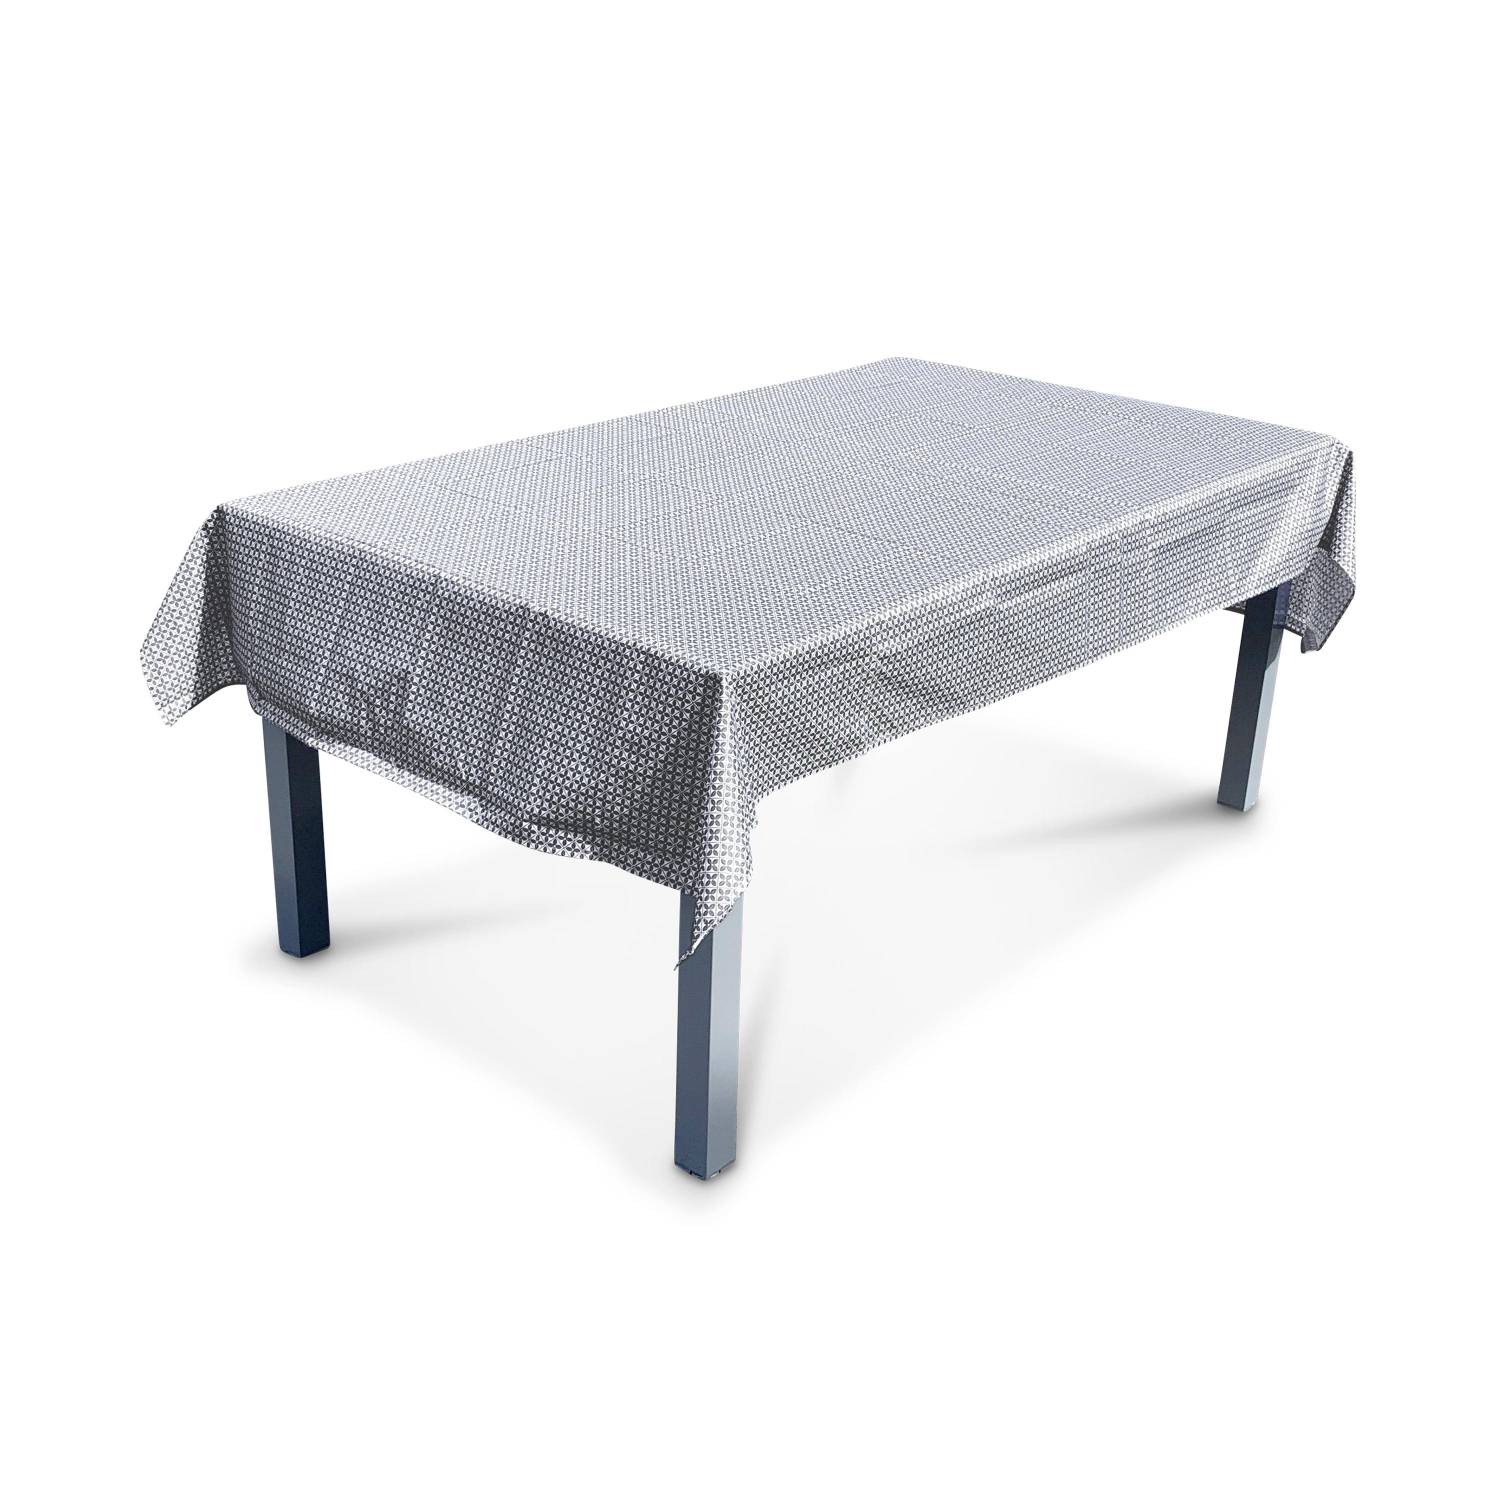 Outdoor-Tischdecke 140 x 240 cm Zementfliesendruck, 100% Polyester, schützt den Tisch, UV-Schutz, sommerlicher Stil | sweeek